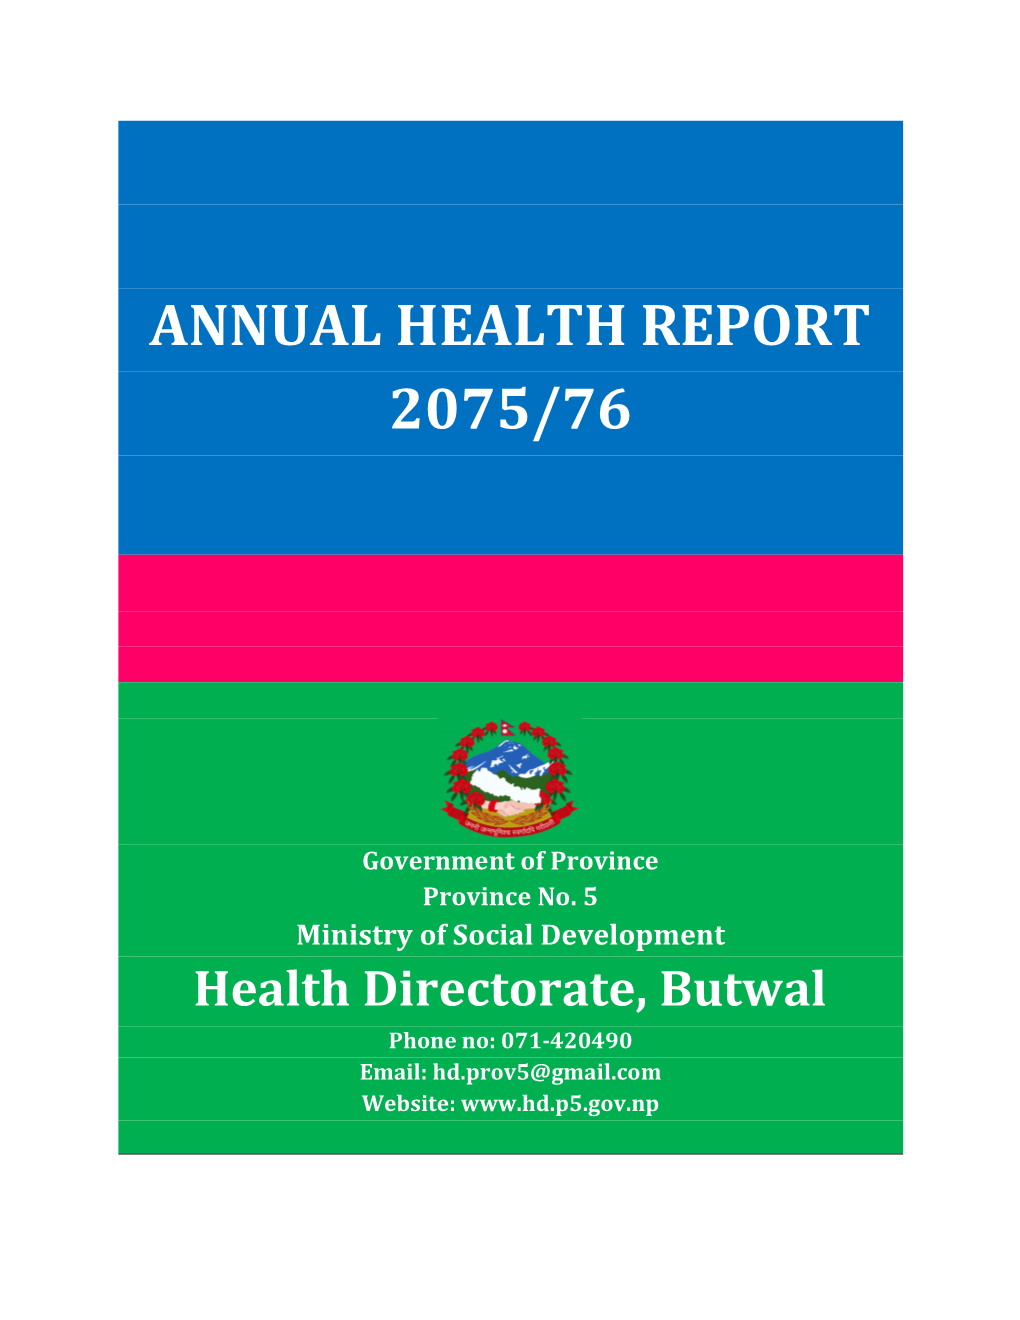 Annual Health Report 2075/76